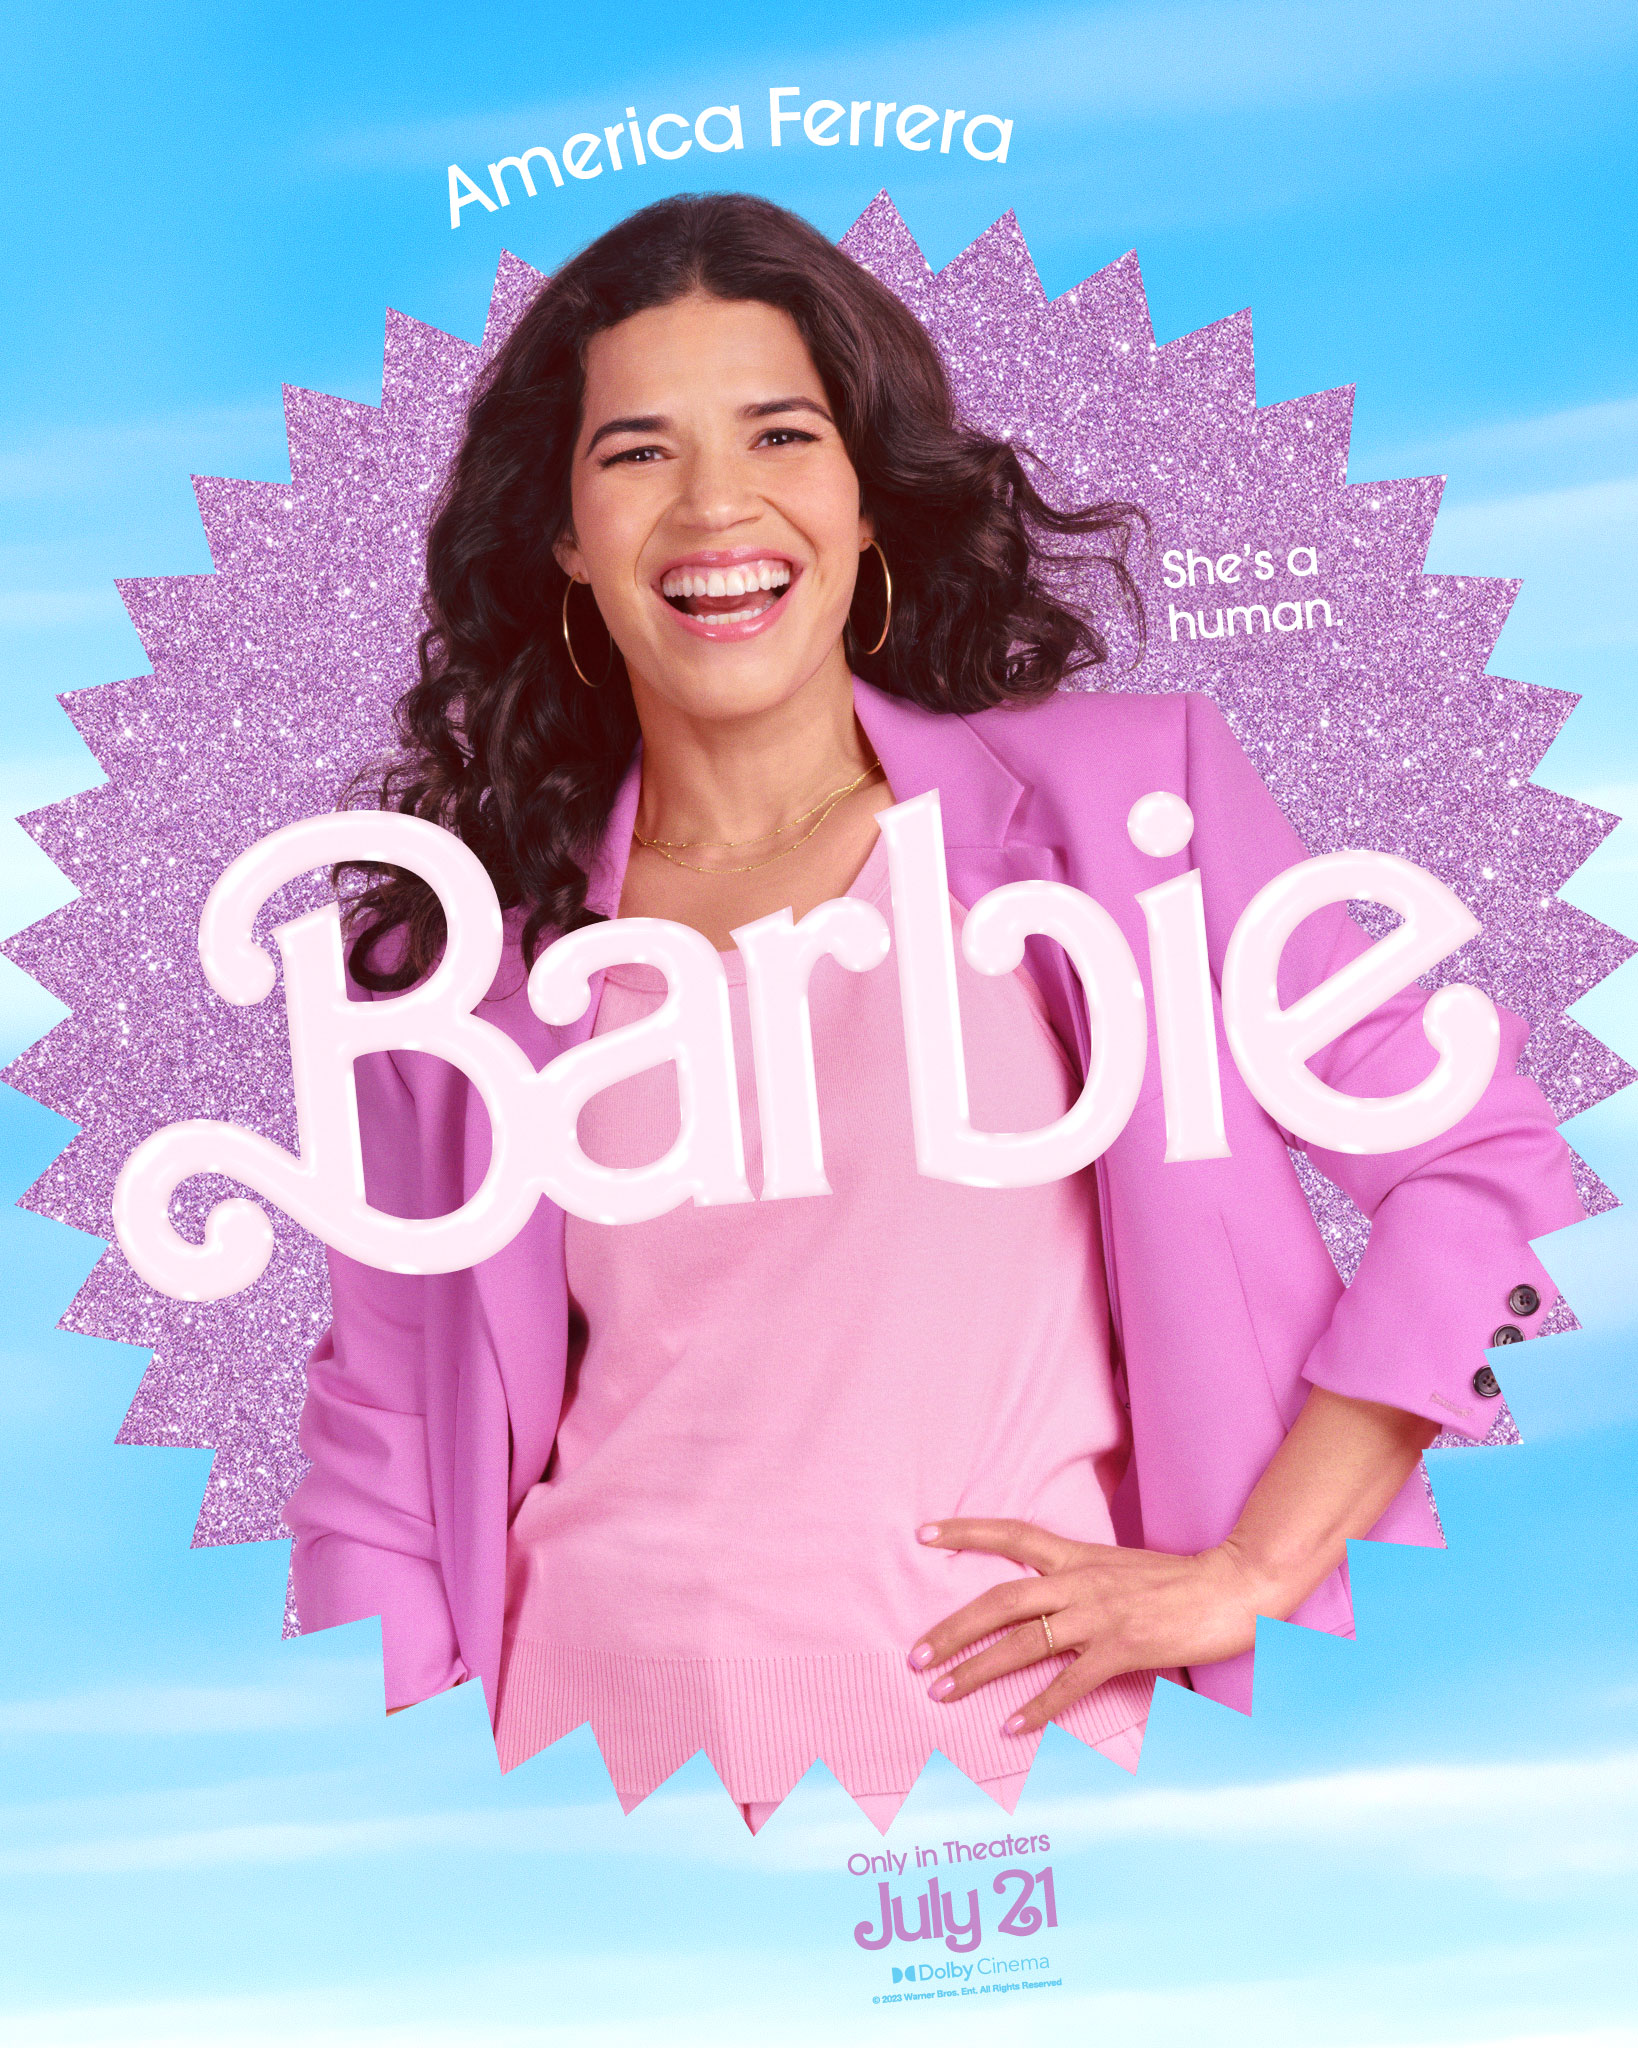 Filmografia da Barbie  Todos Os Filmes Da Barbie (1987-2021